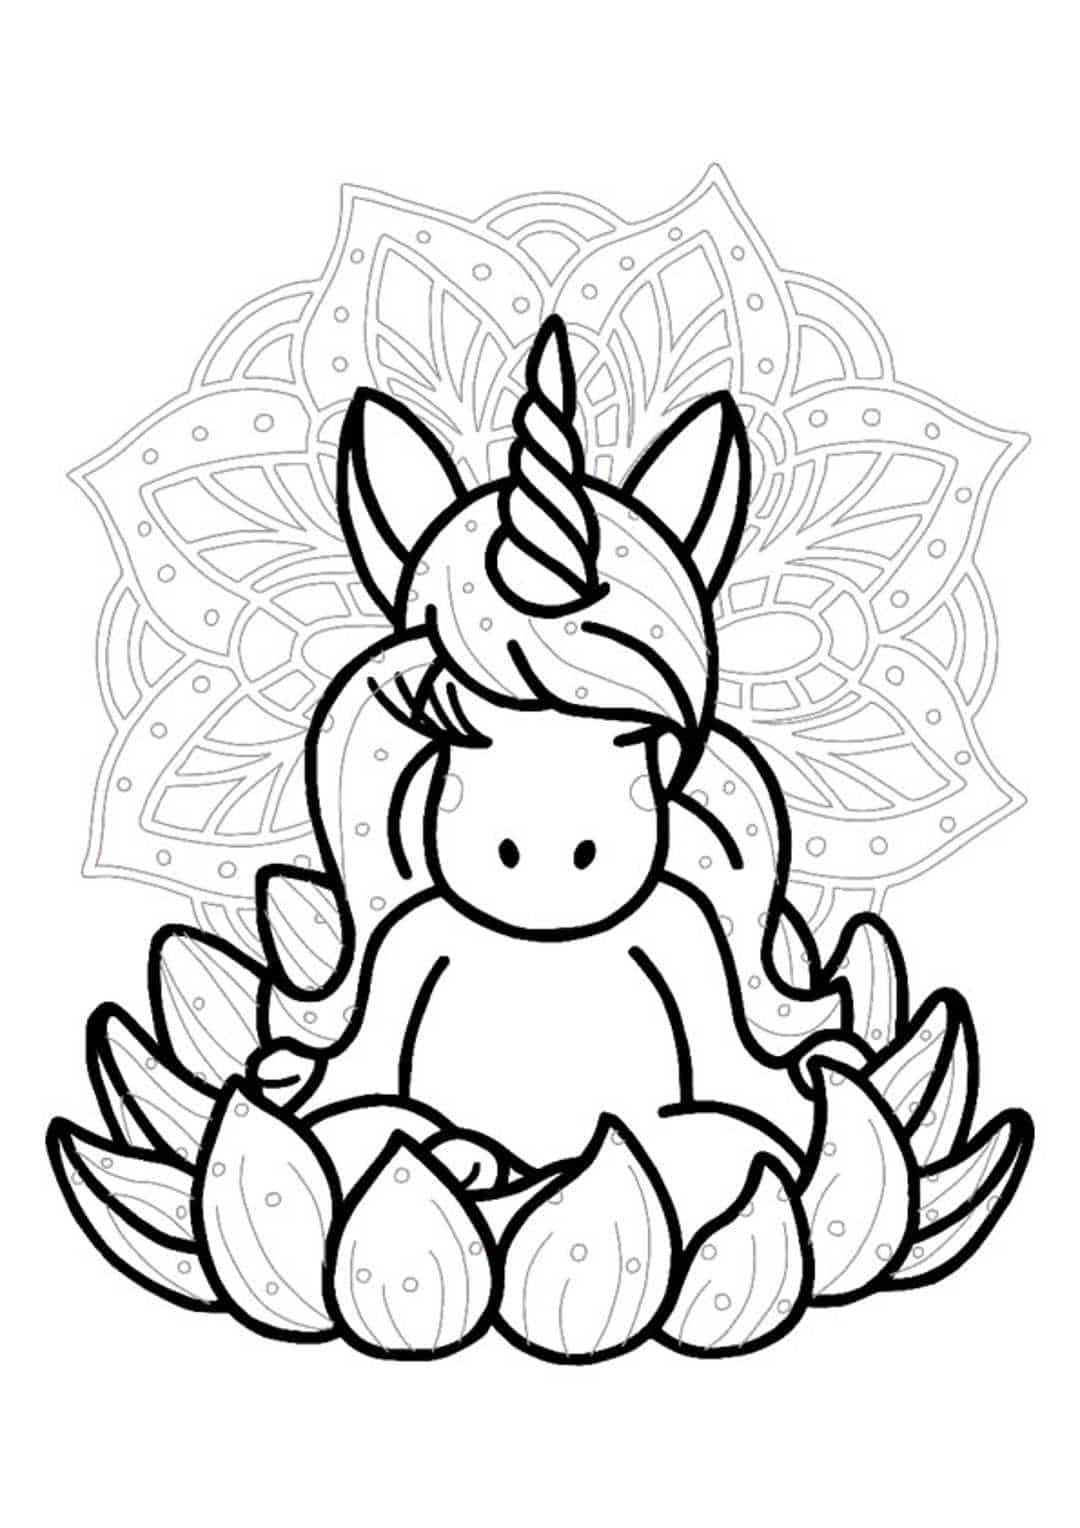 Unicorn mandala coloring page